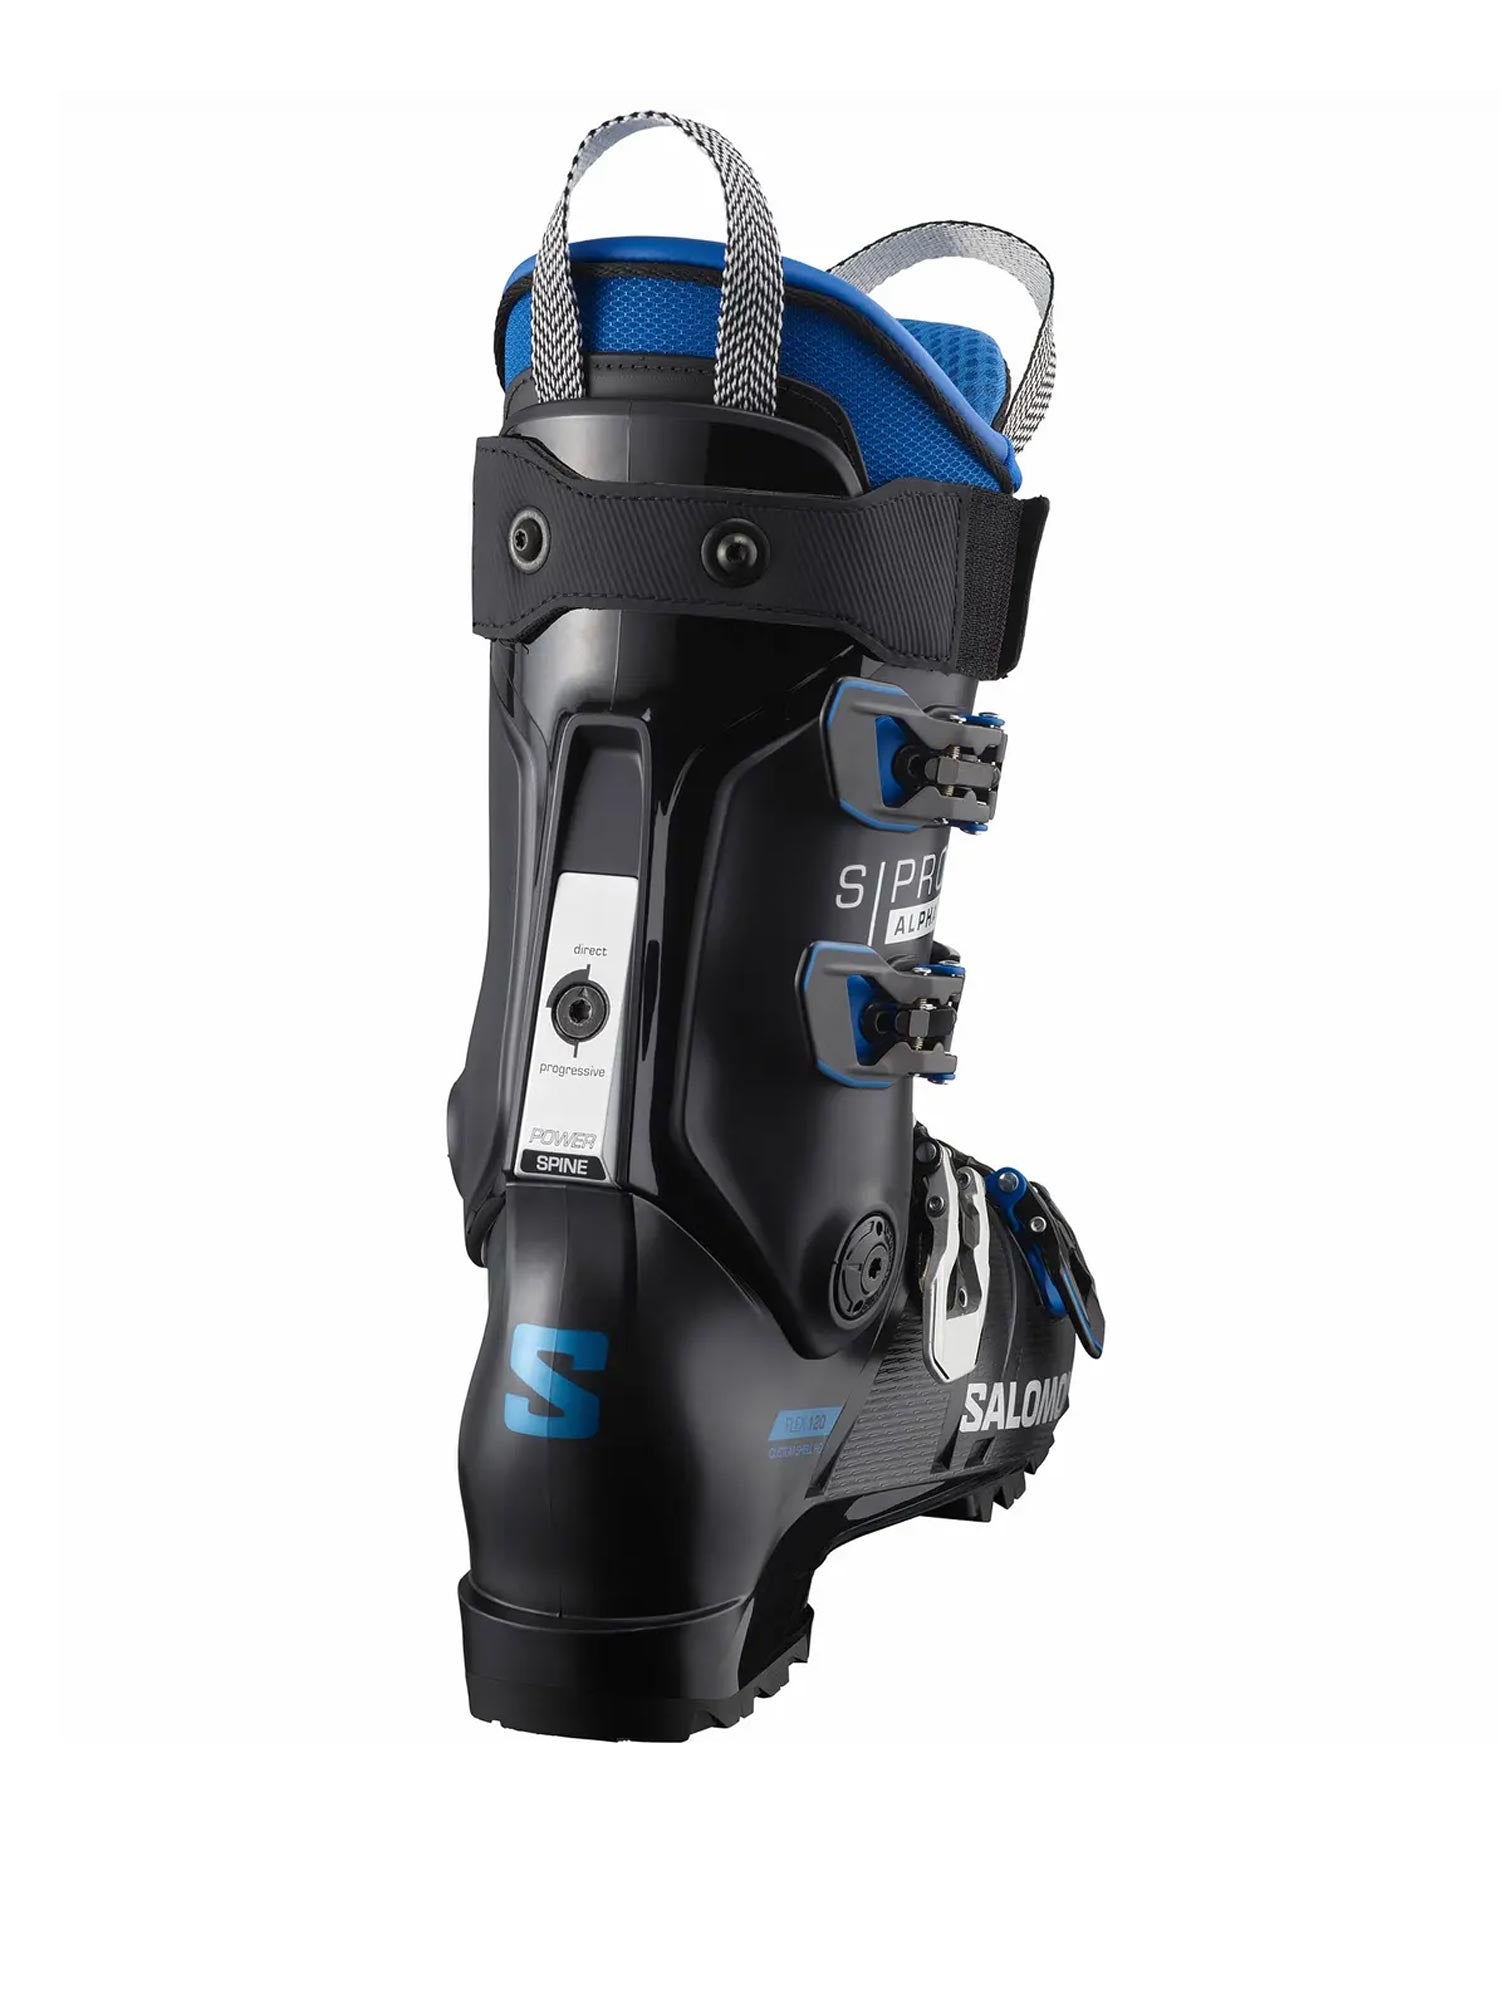 men's Salomon ski boots, black with blue accents